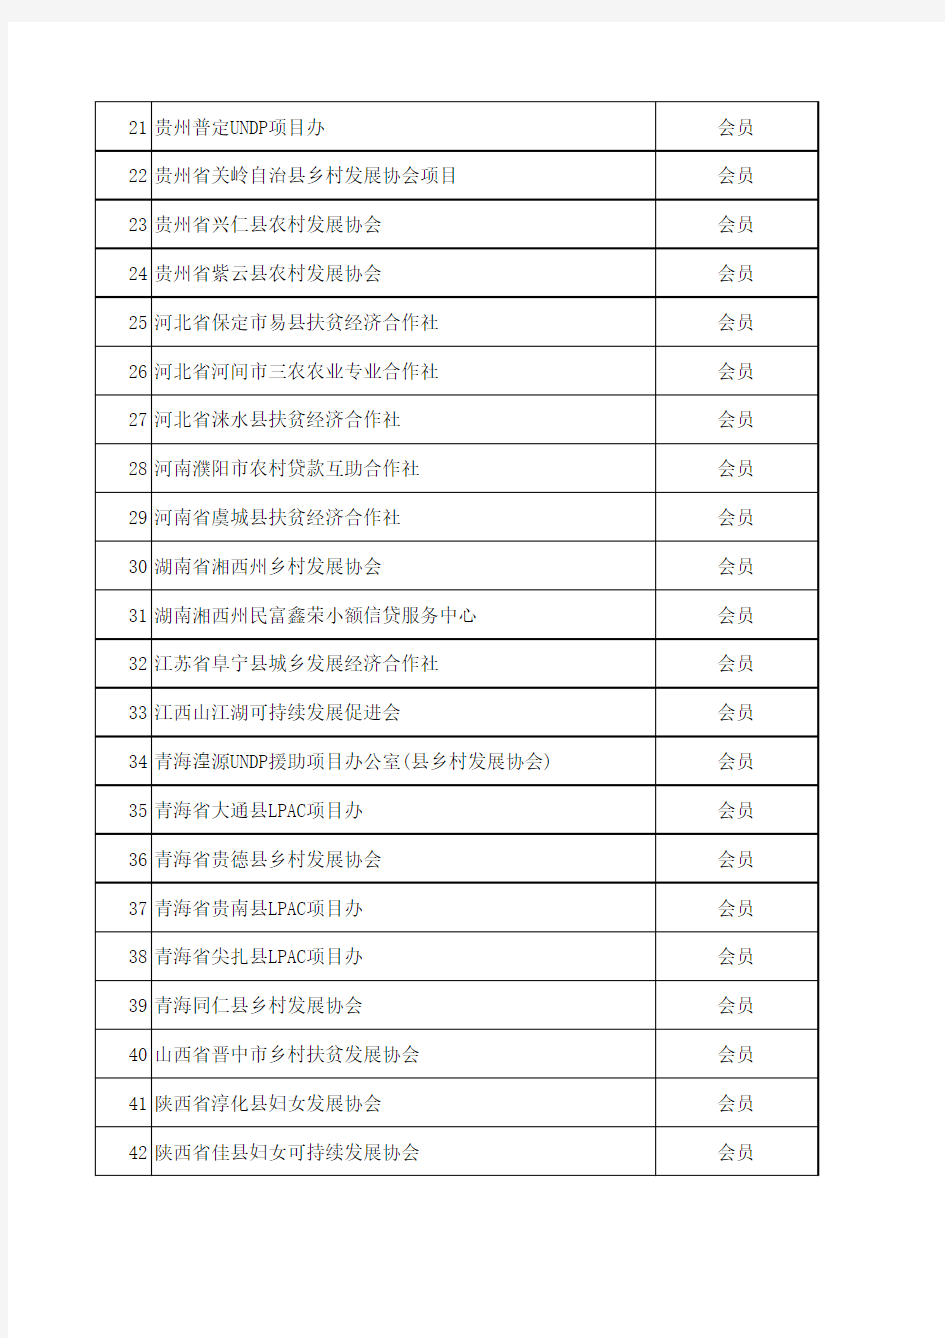 中国小额信贷联盟正式会员名单